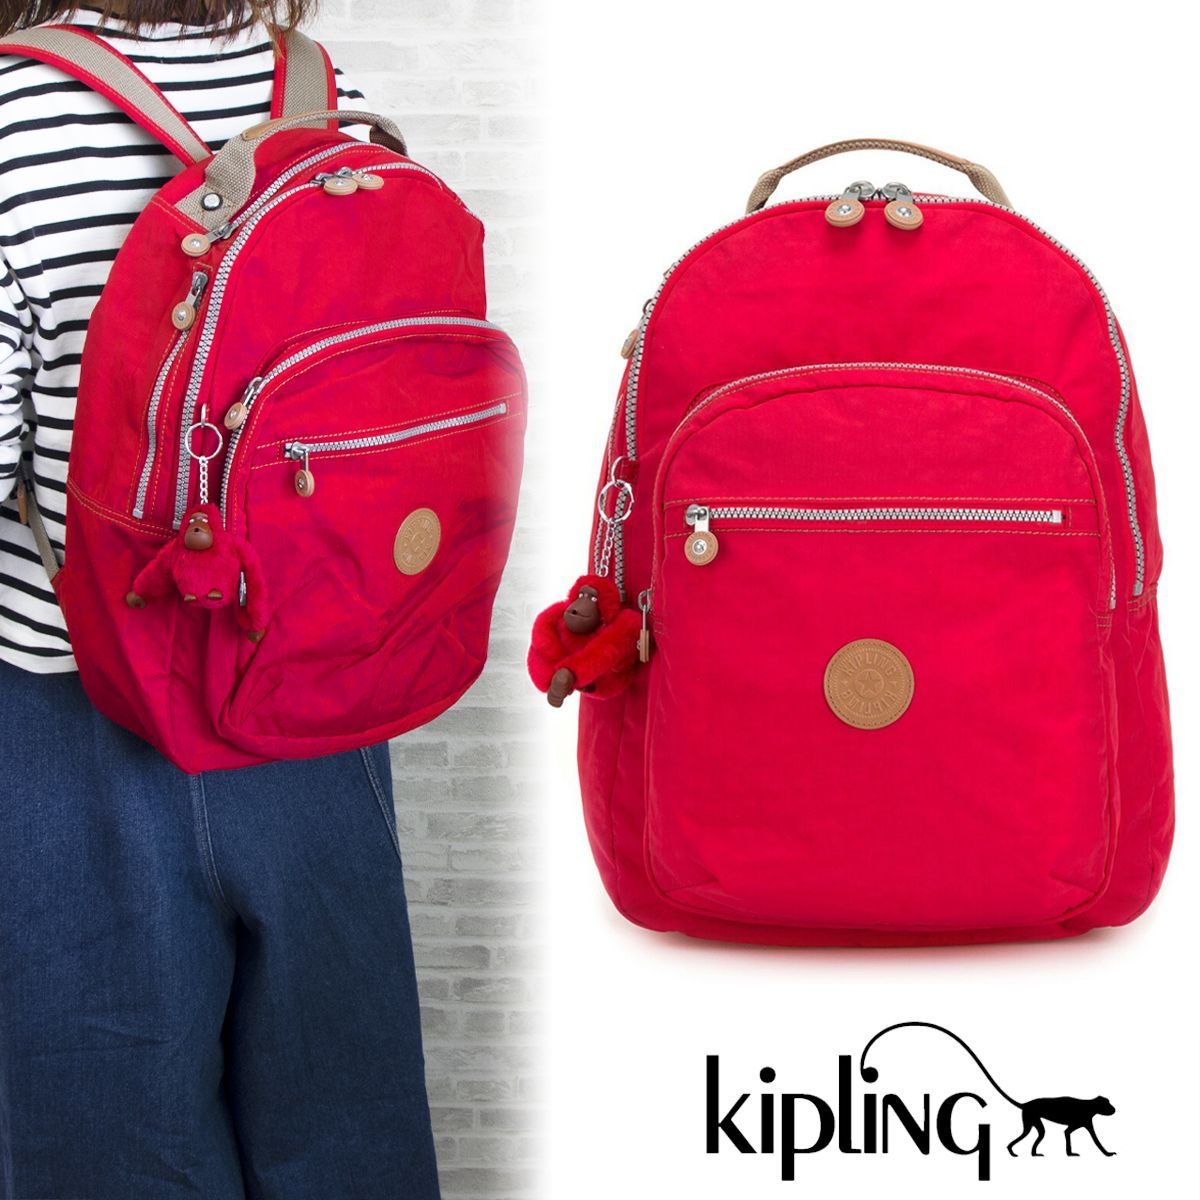 Kipling キプリング レディース リュック RED